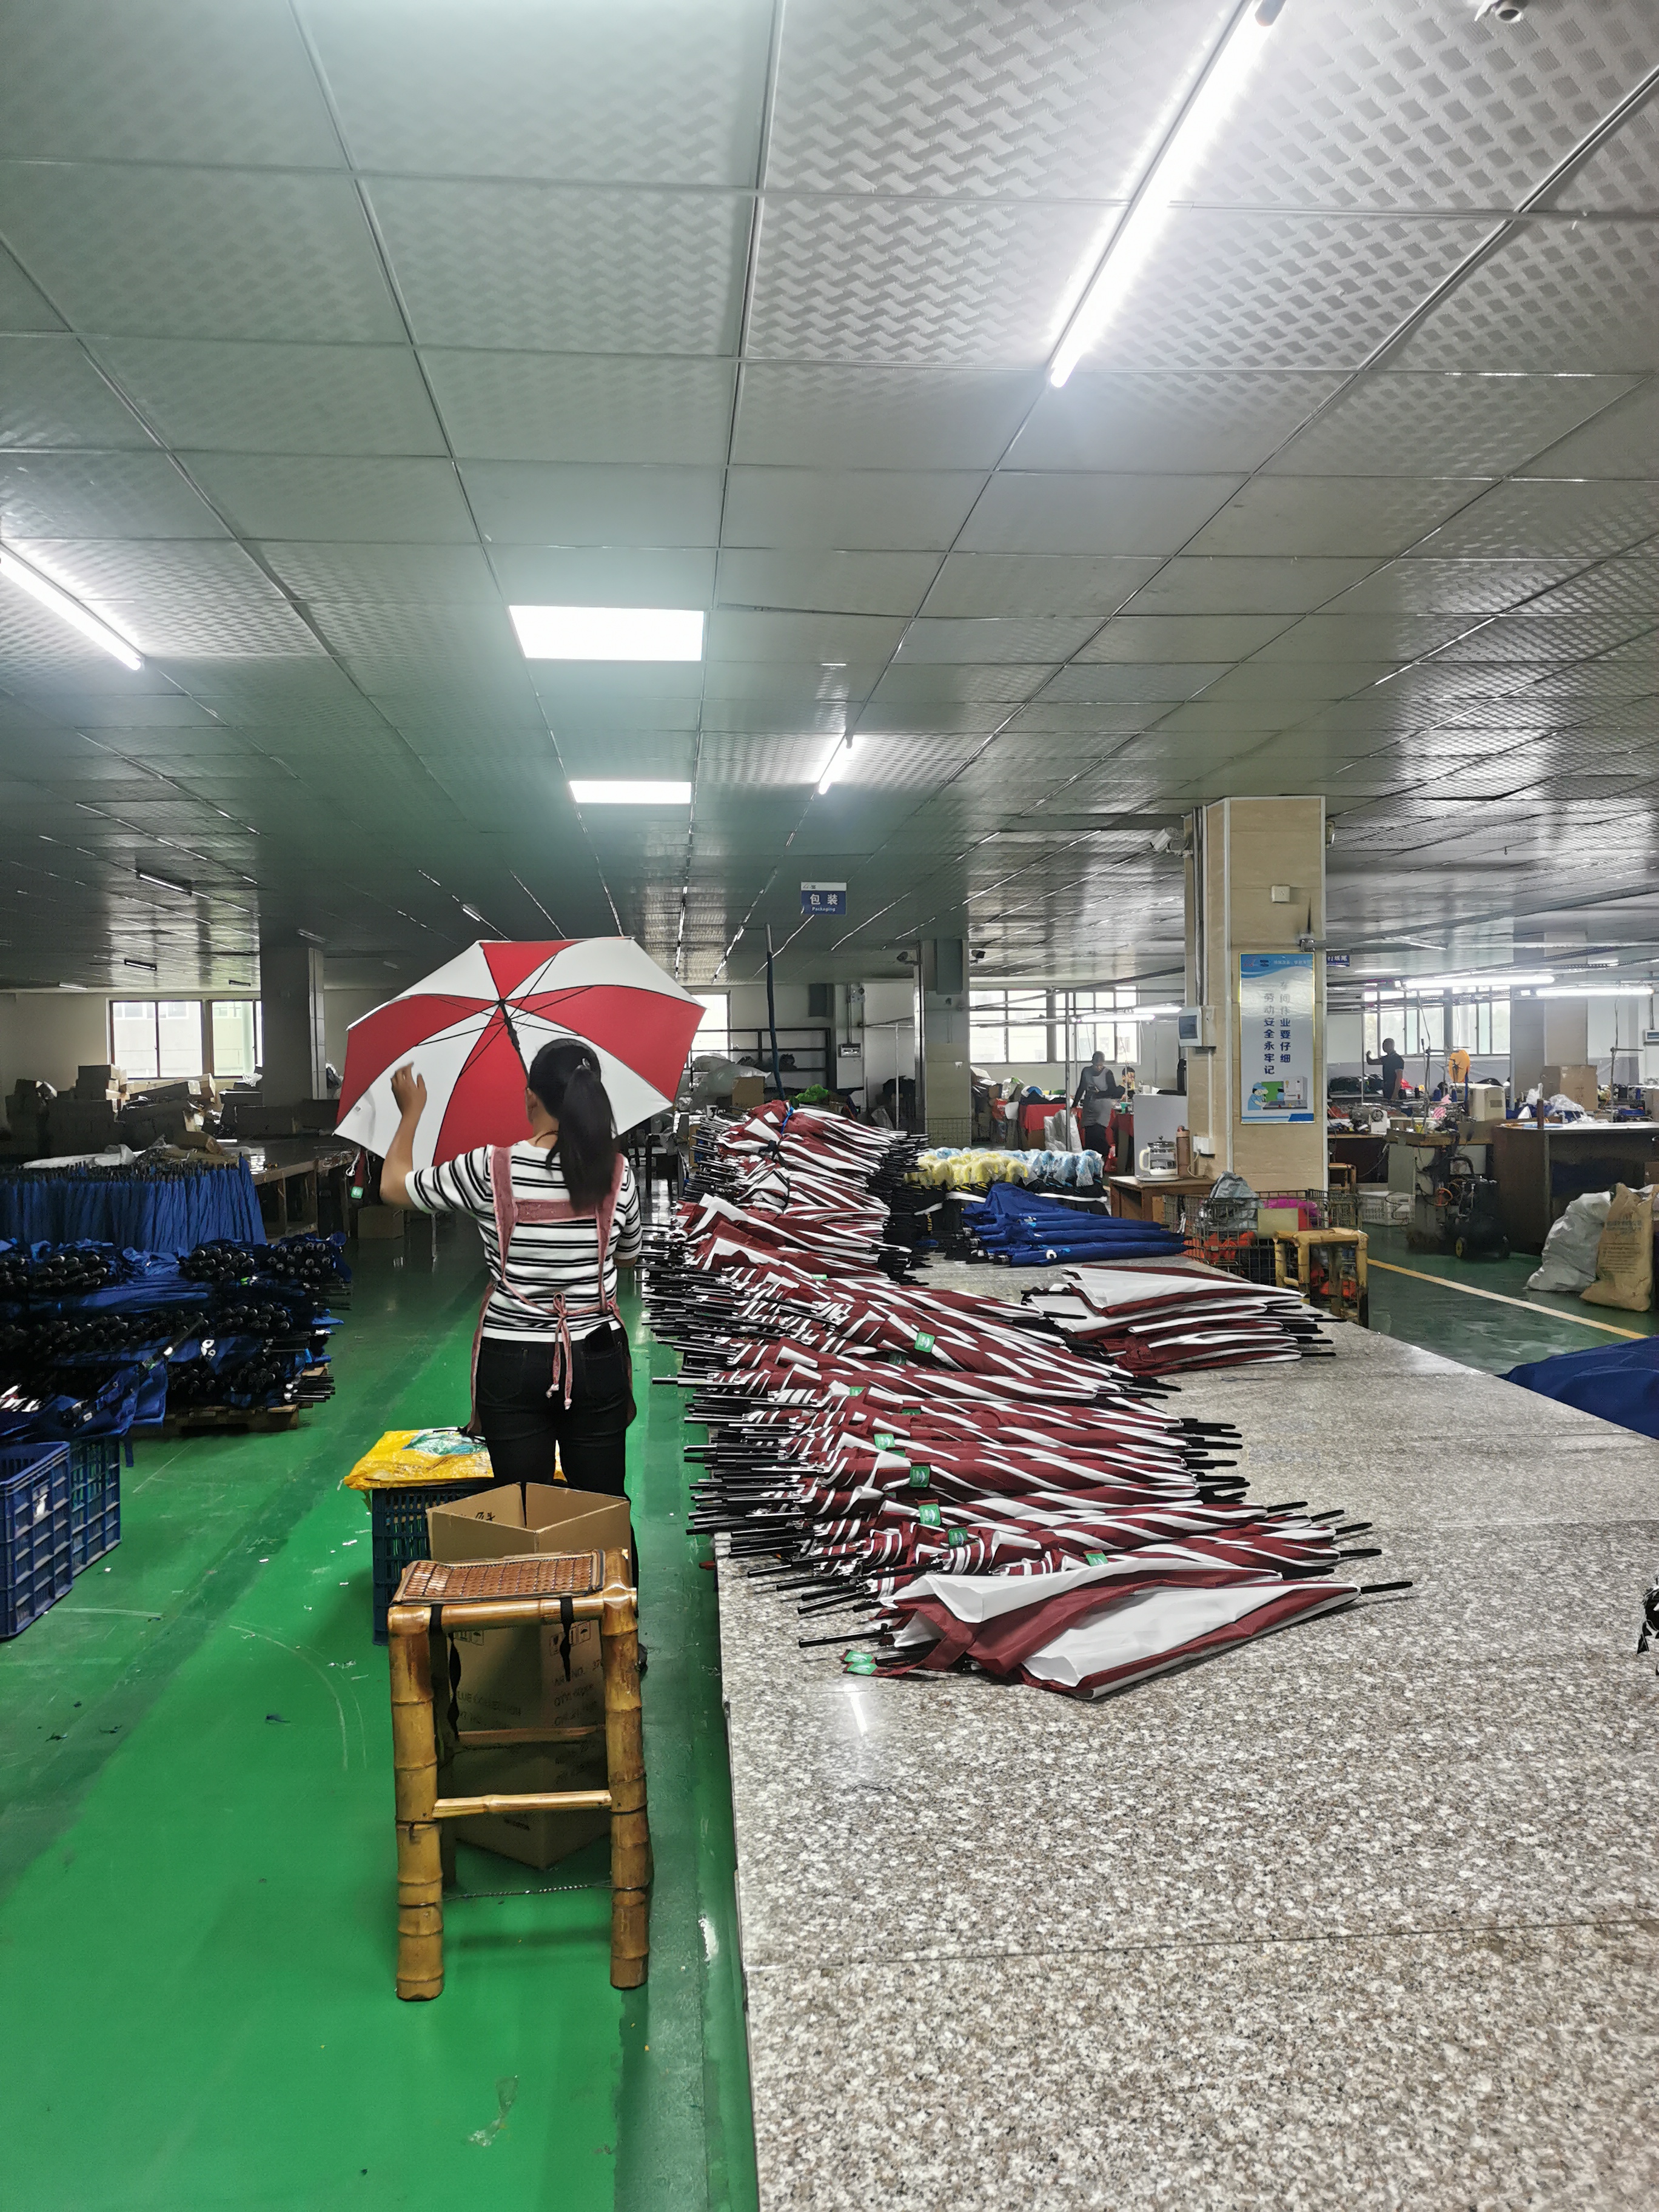 Xiamen Hoda Umbrella Rov pib tsim tom qab CNY hnub so